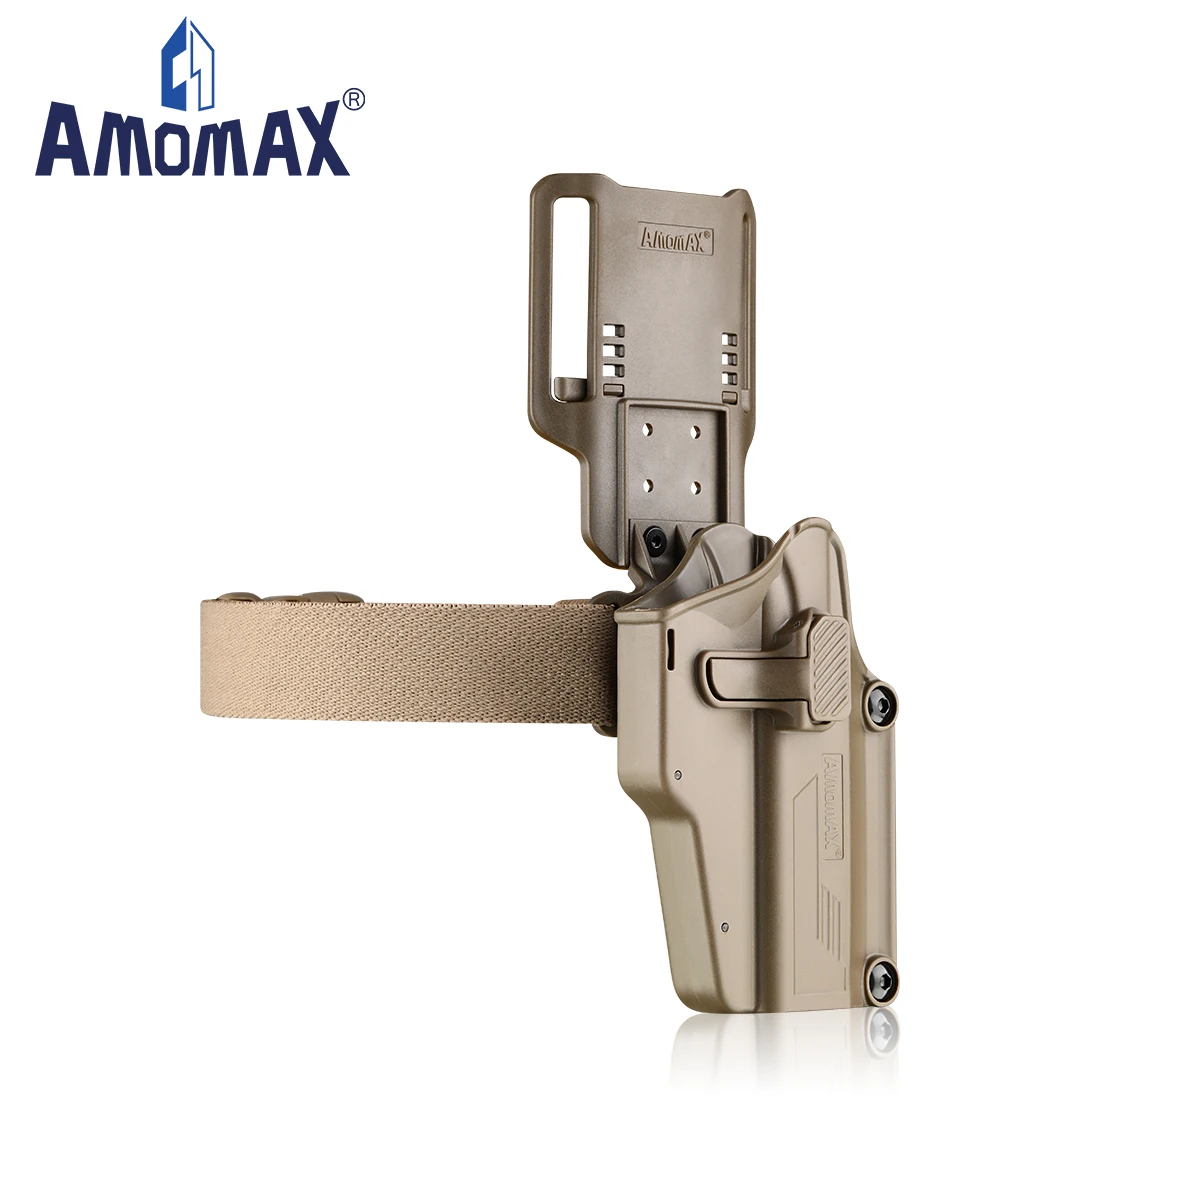 Amomax-funda táctica de caza, accesorio Universal ajustable de 360 grados para mano izquierda, se adapta a más de 200 pistolas